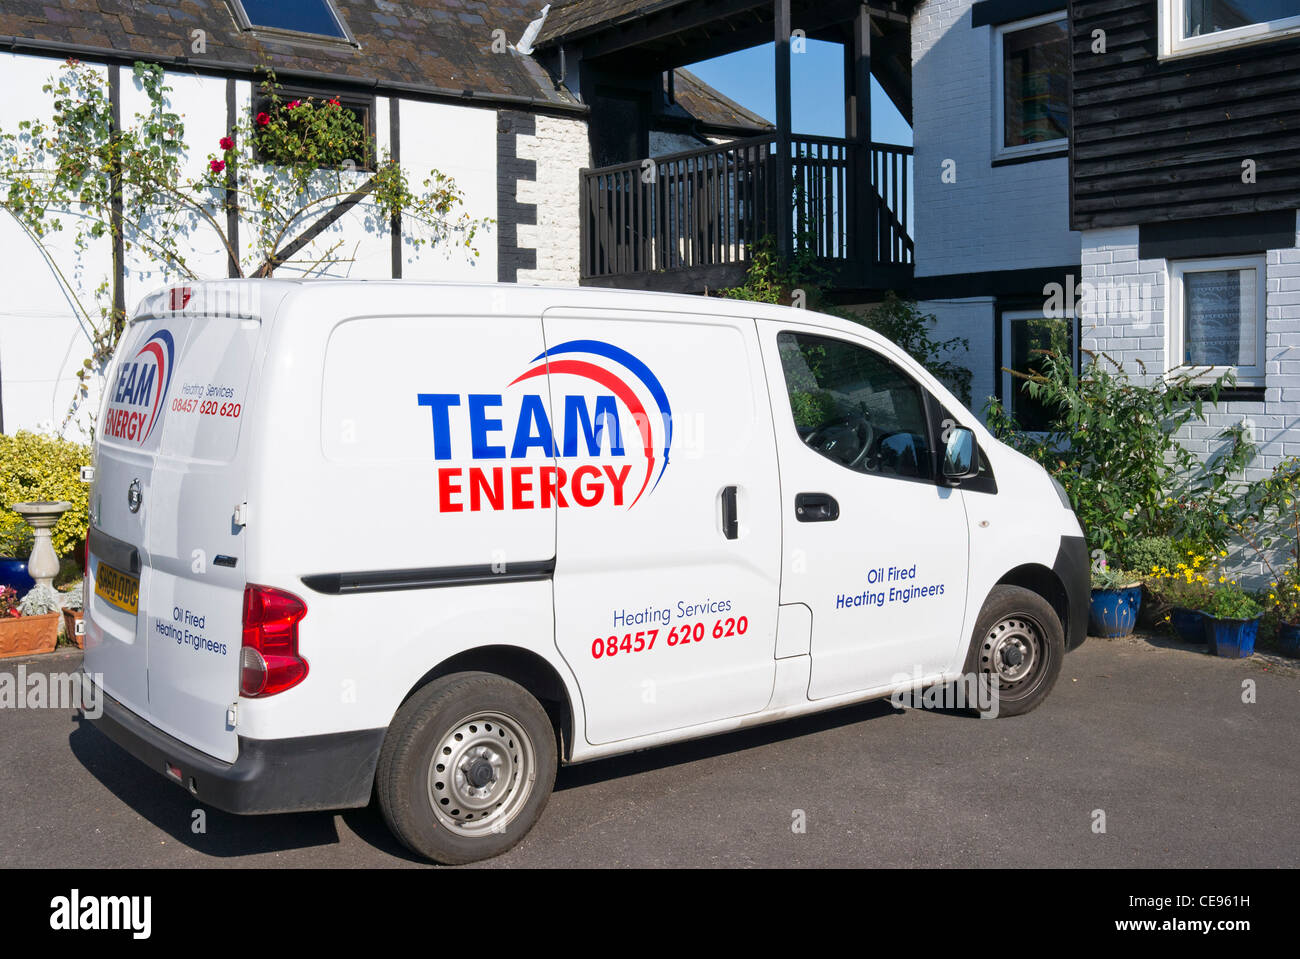 TEAM ENERGY chauffage services white van dans les locaux au Royaume-Uni Banque D'Images